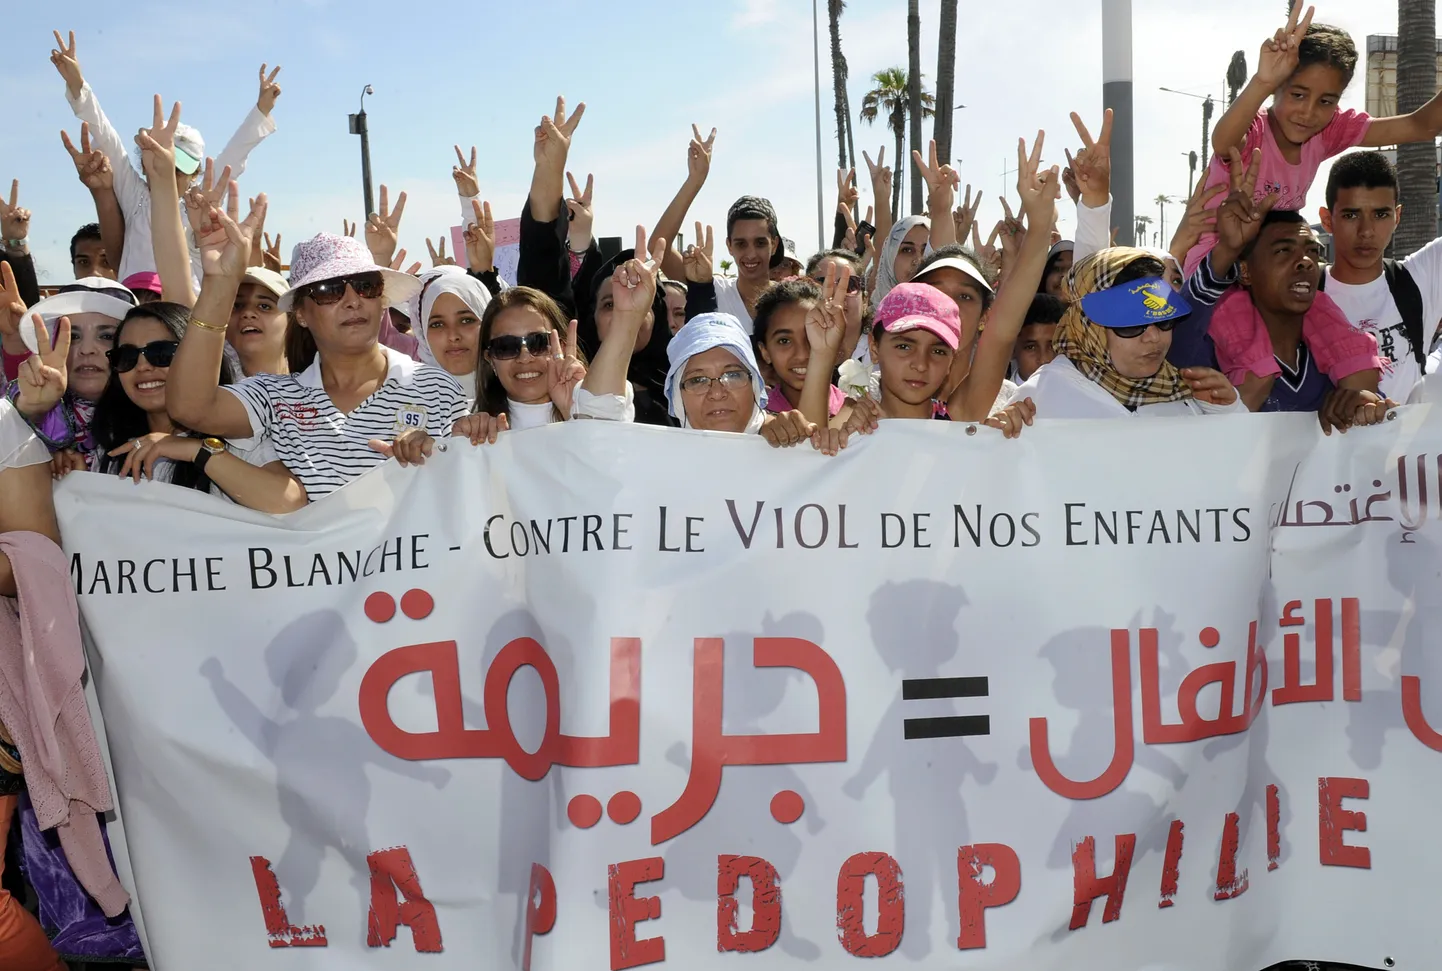 Marokolased laste seksuaalse ärakasutamsie vastasel meeleavaldusel Casablancas.